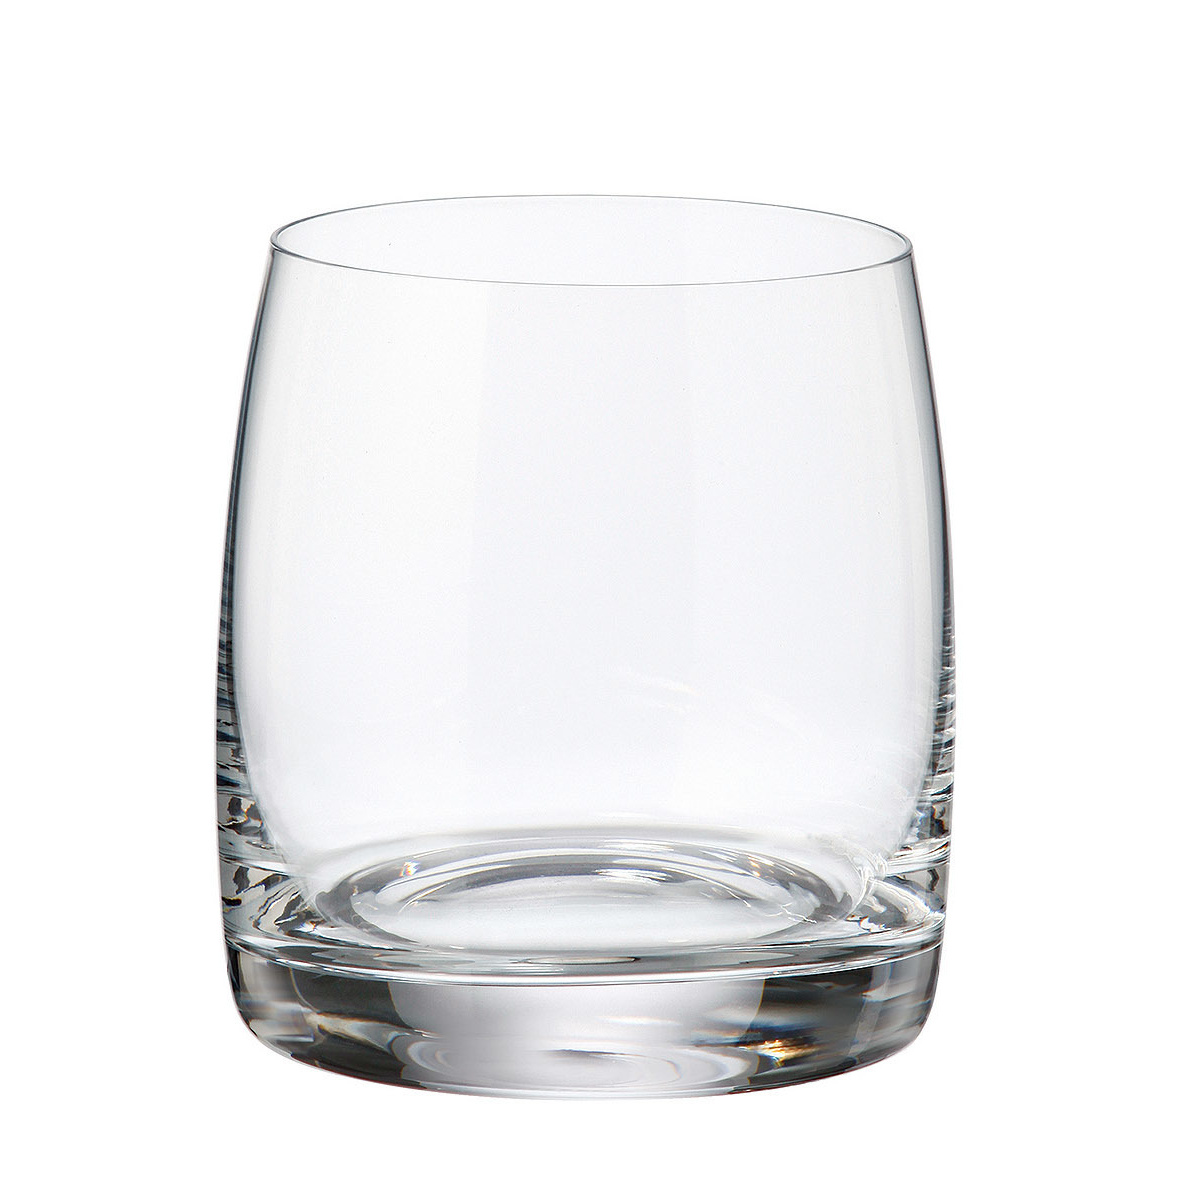 Crystalite Bohemia sklenice na whisky Pavo 290 ml 6KS